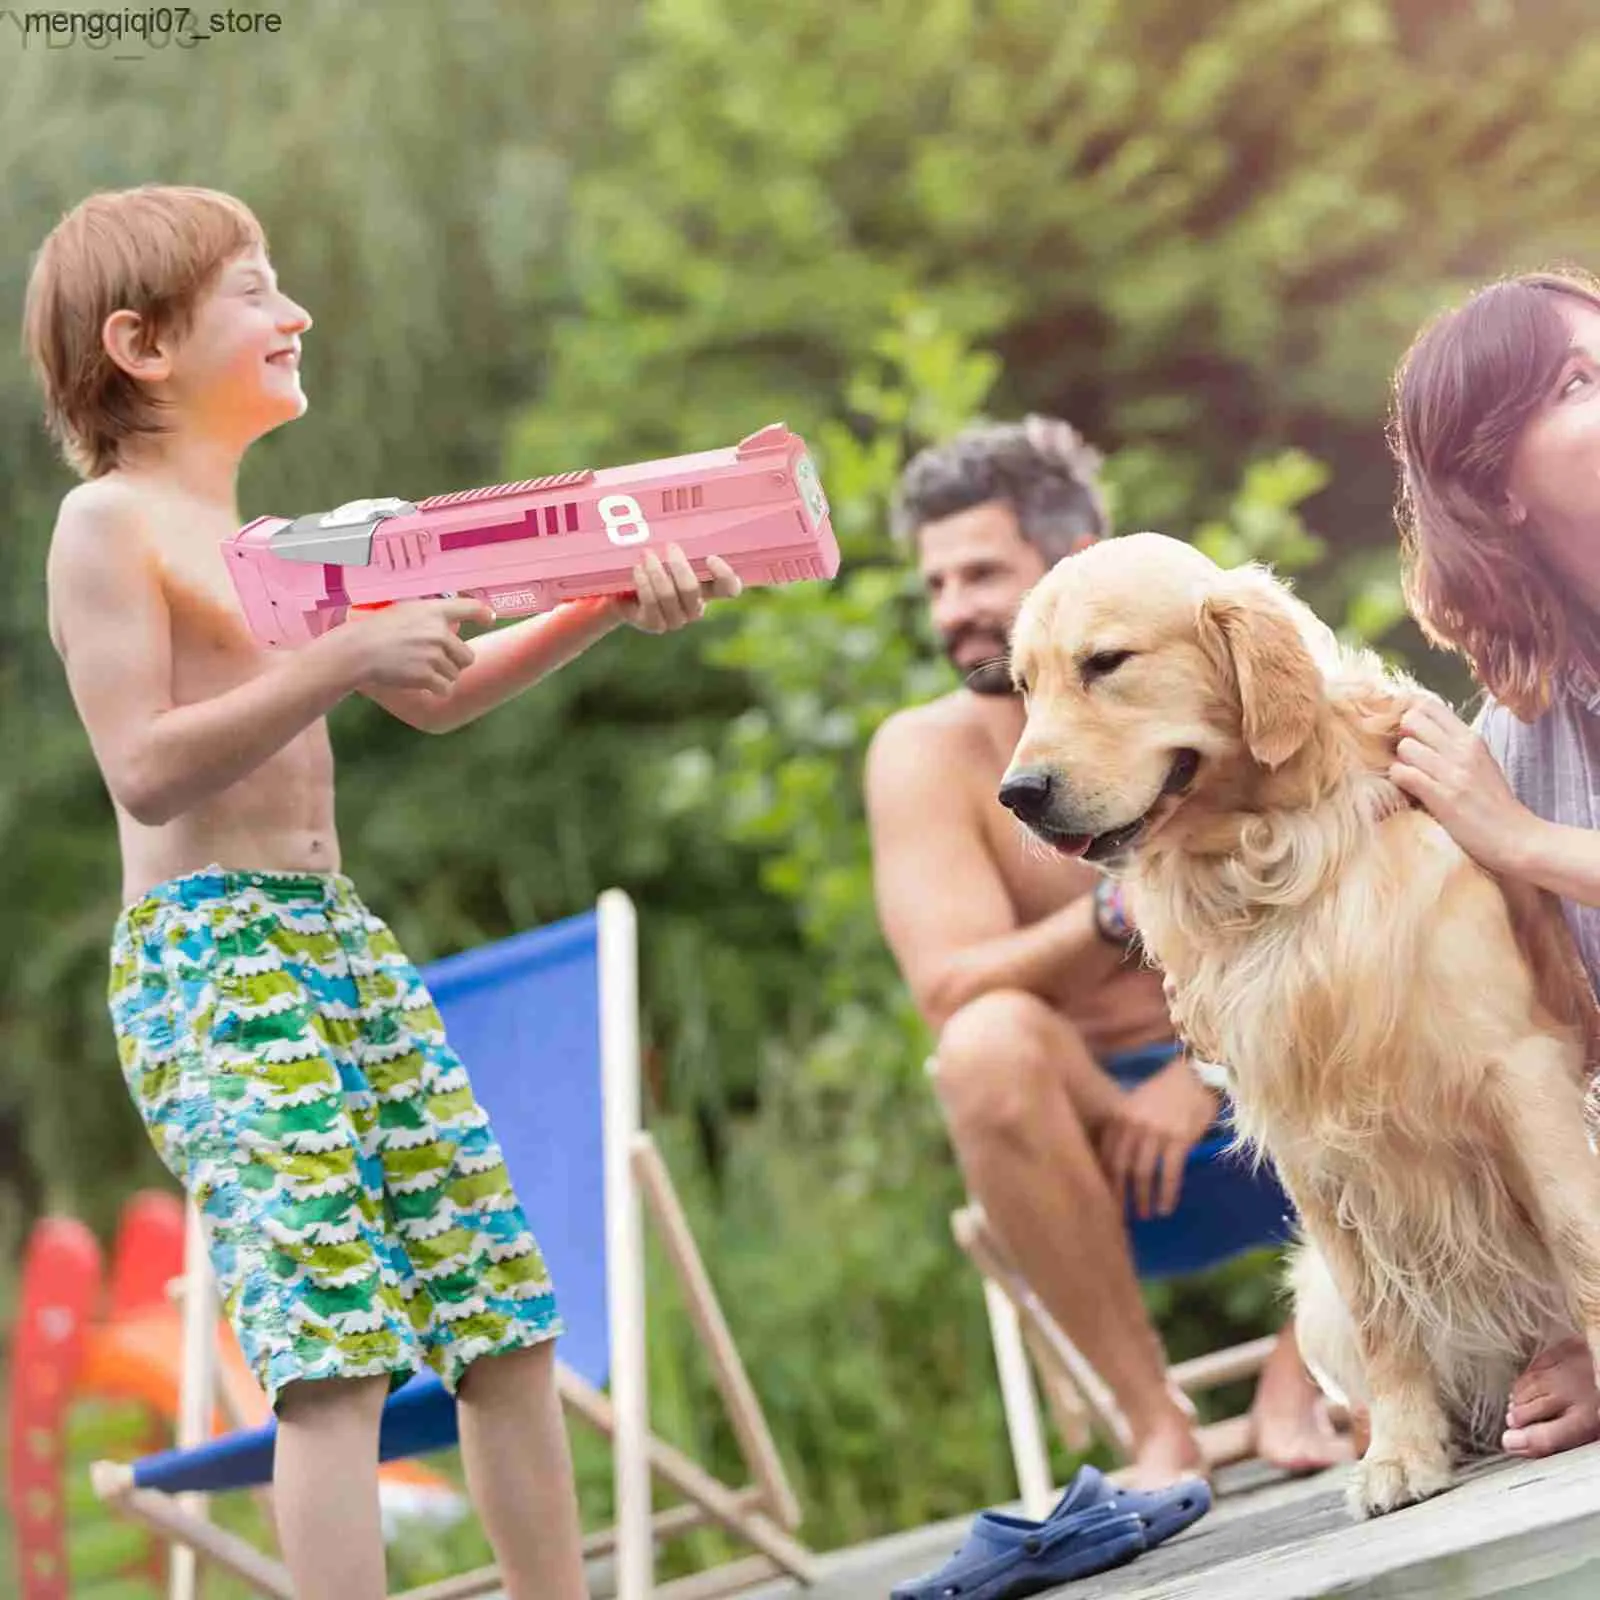 Pistolet à eau électrique automatique, jeu de sable amusant, jouets pour piscine d'été, grande capacité, plage en plein air pour adultes et enfants L0312